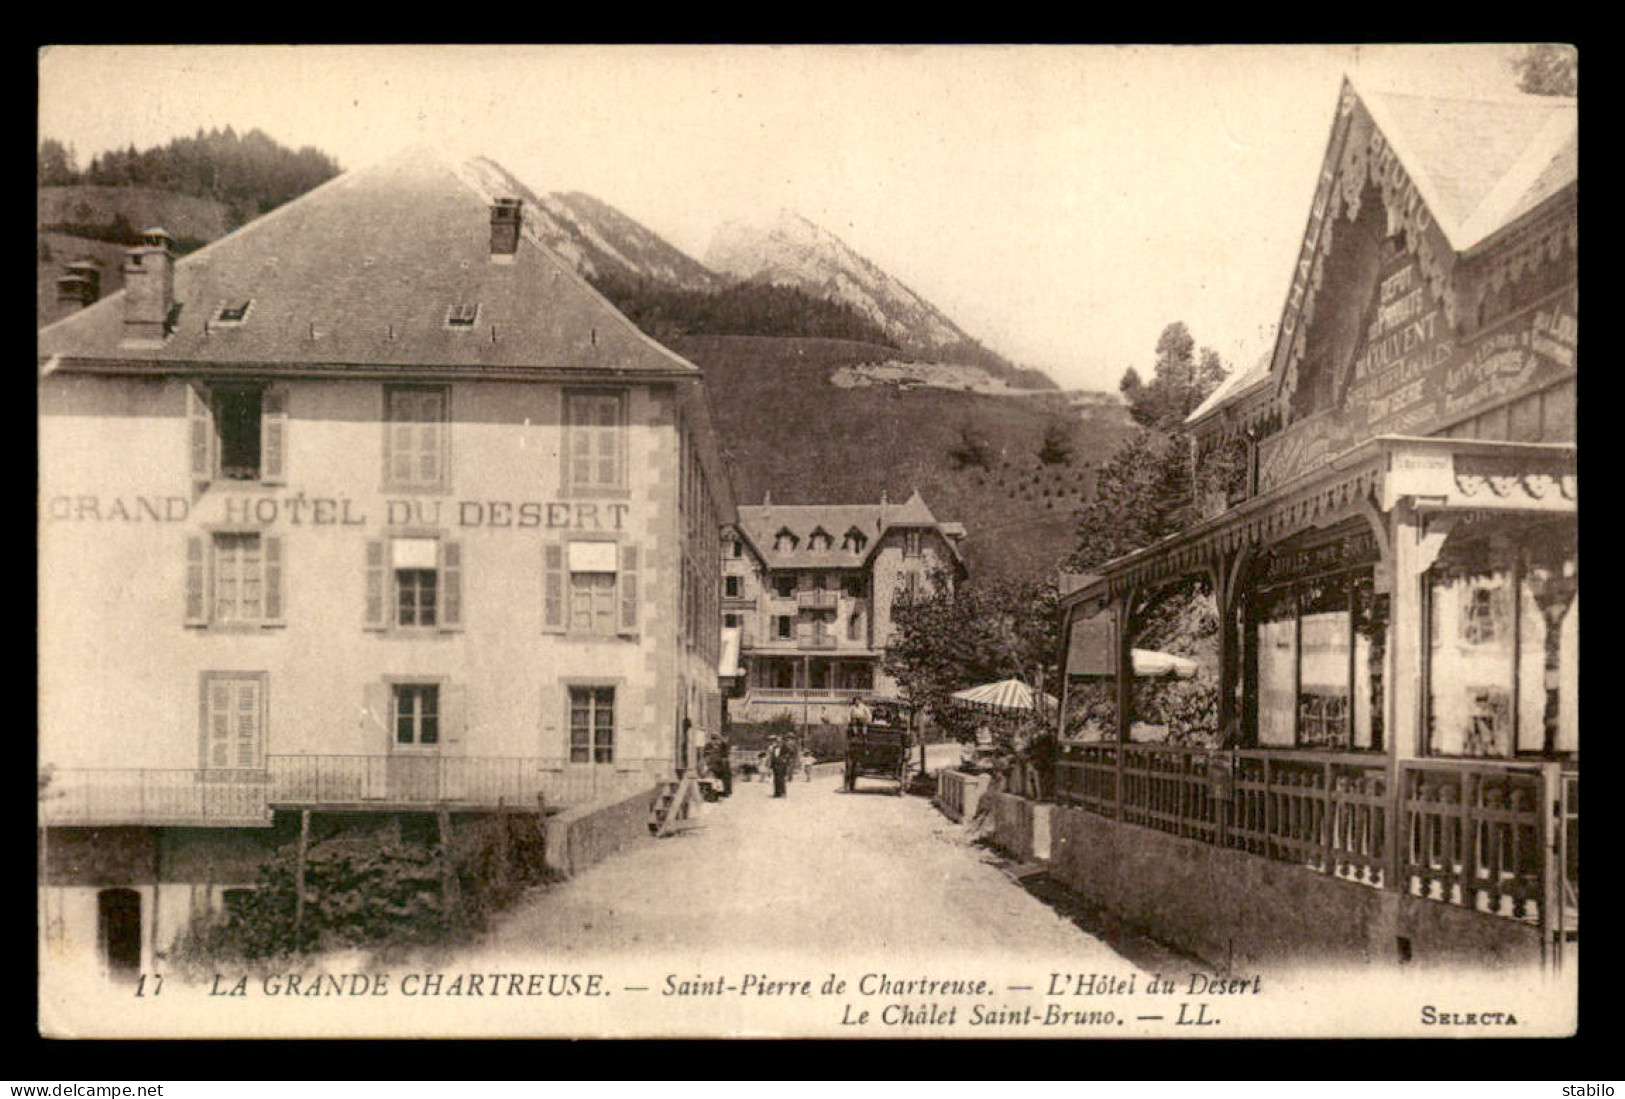 38 - LA GRANDE-CHARTREUSE - ST-PIERRE-DE-CHARTREUSE - L'HOTEL DU DESERT - LE CHALET ST-BRUNO - Chartreuse